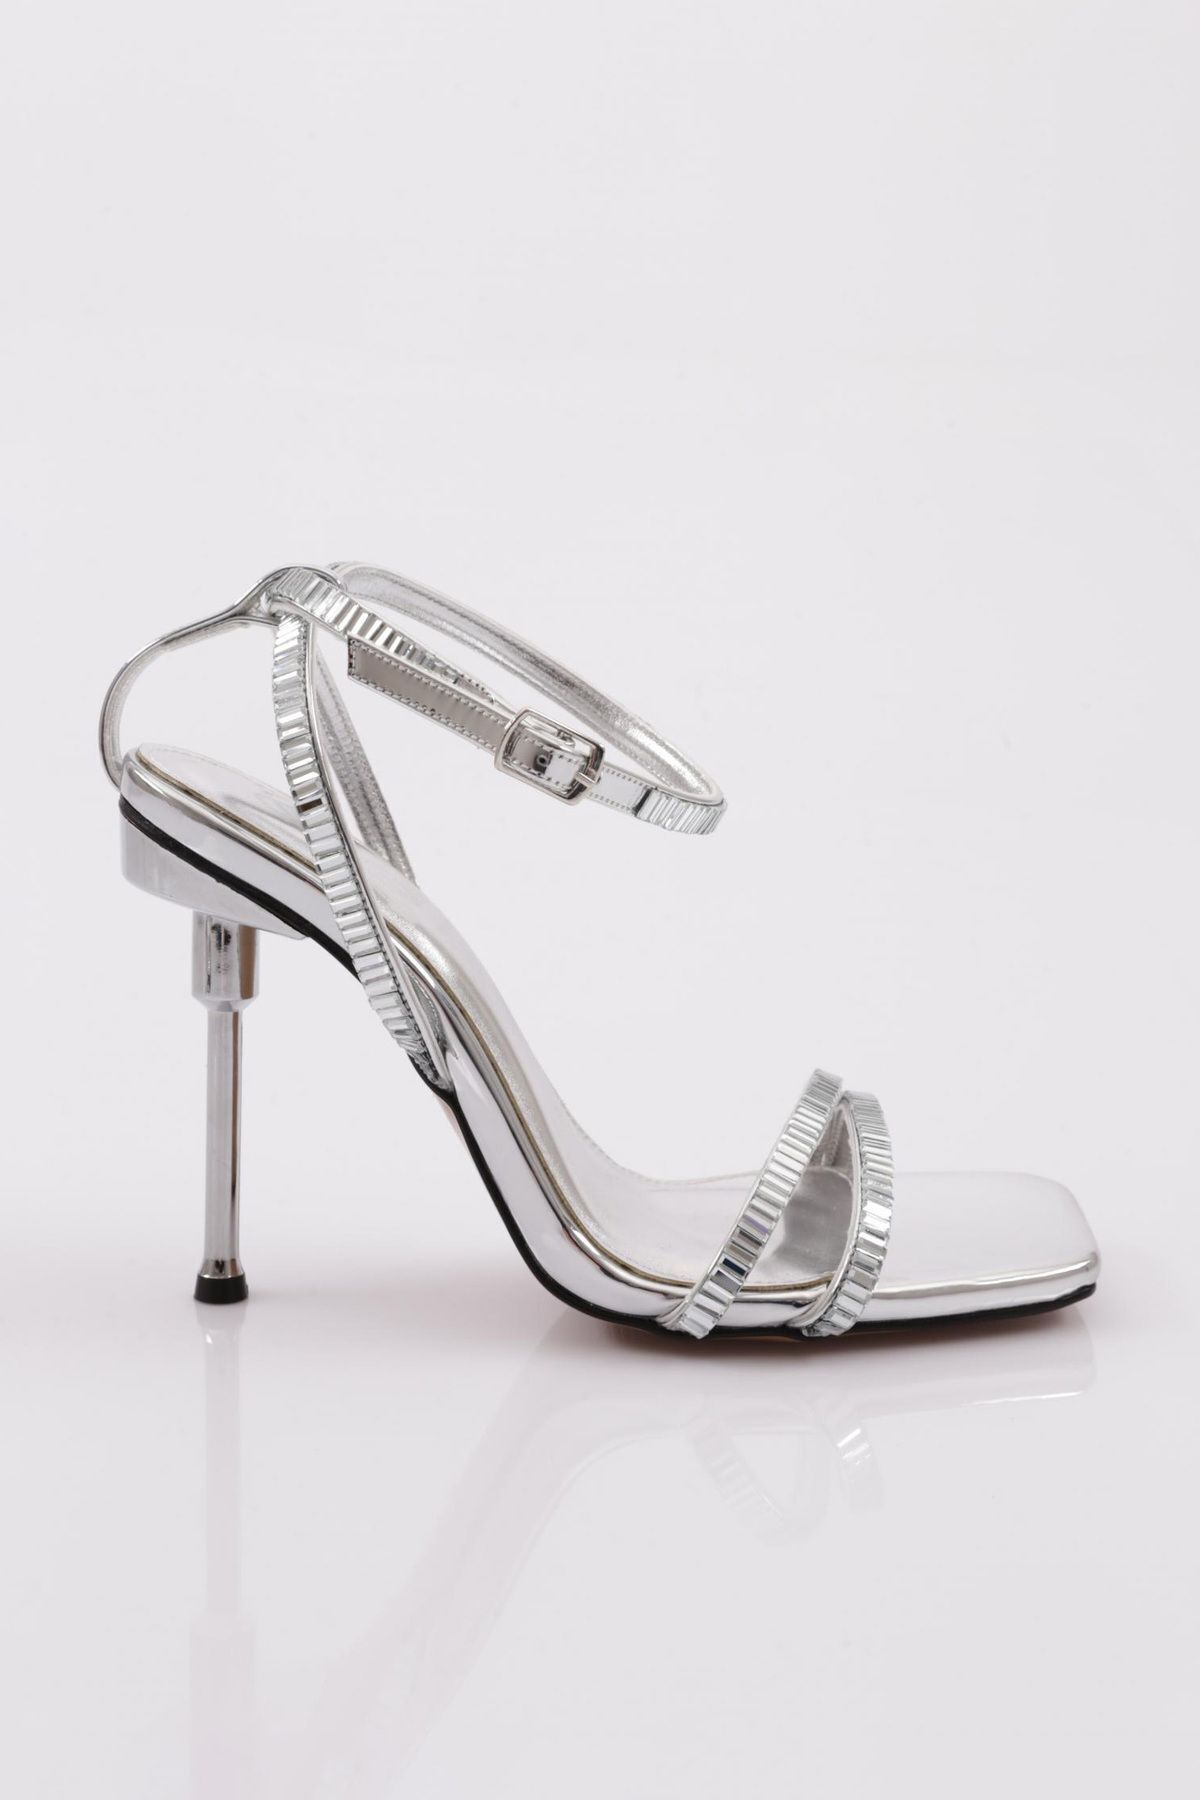 Dgn 1273 Kadın Bilekten Bağlama Topuklu Ayakkabı Gümüş Ayna